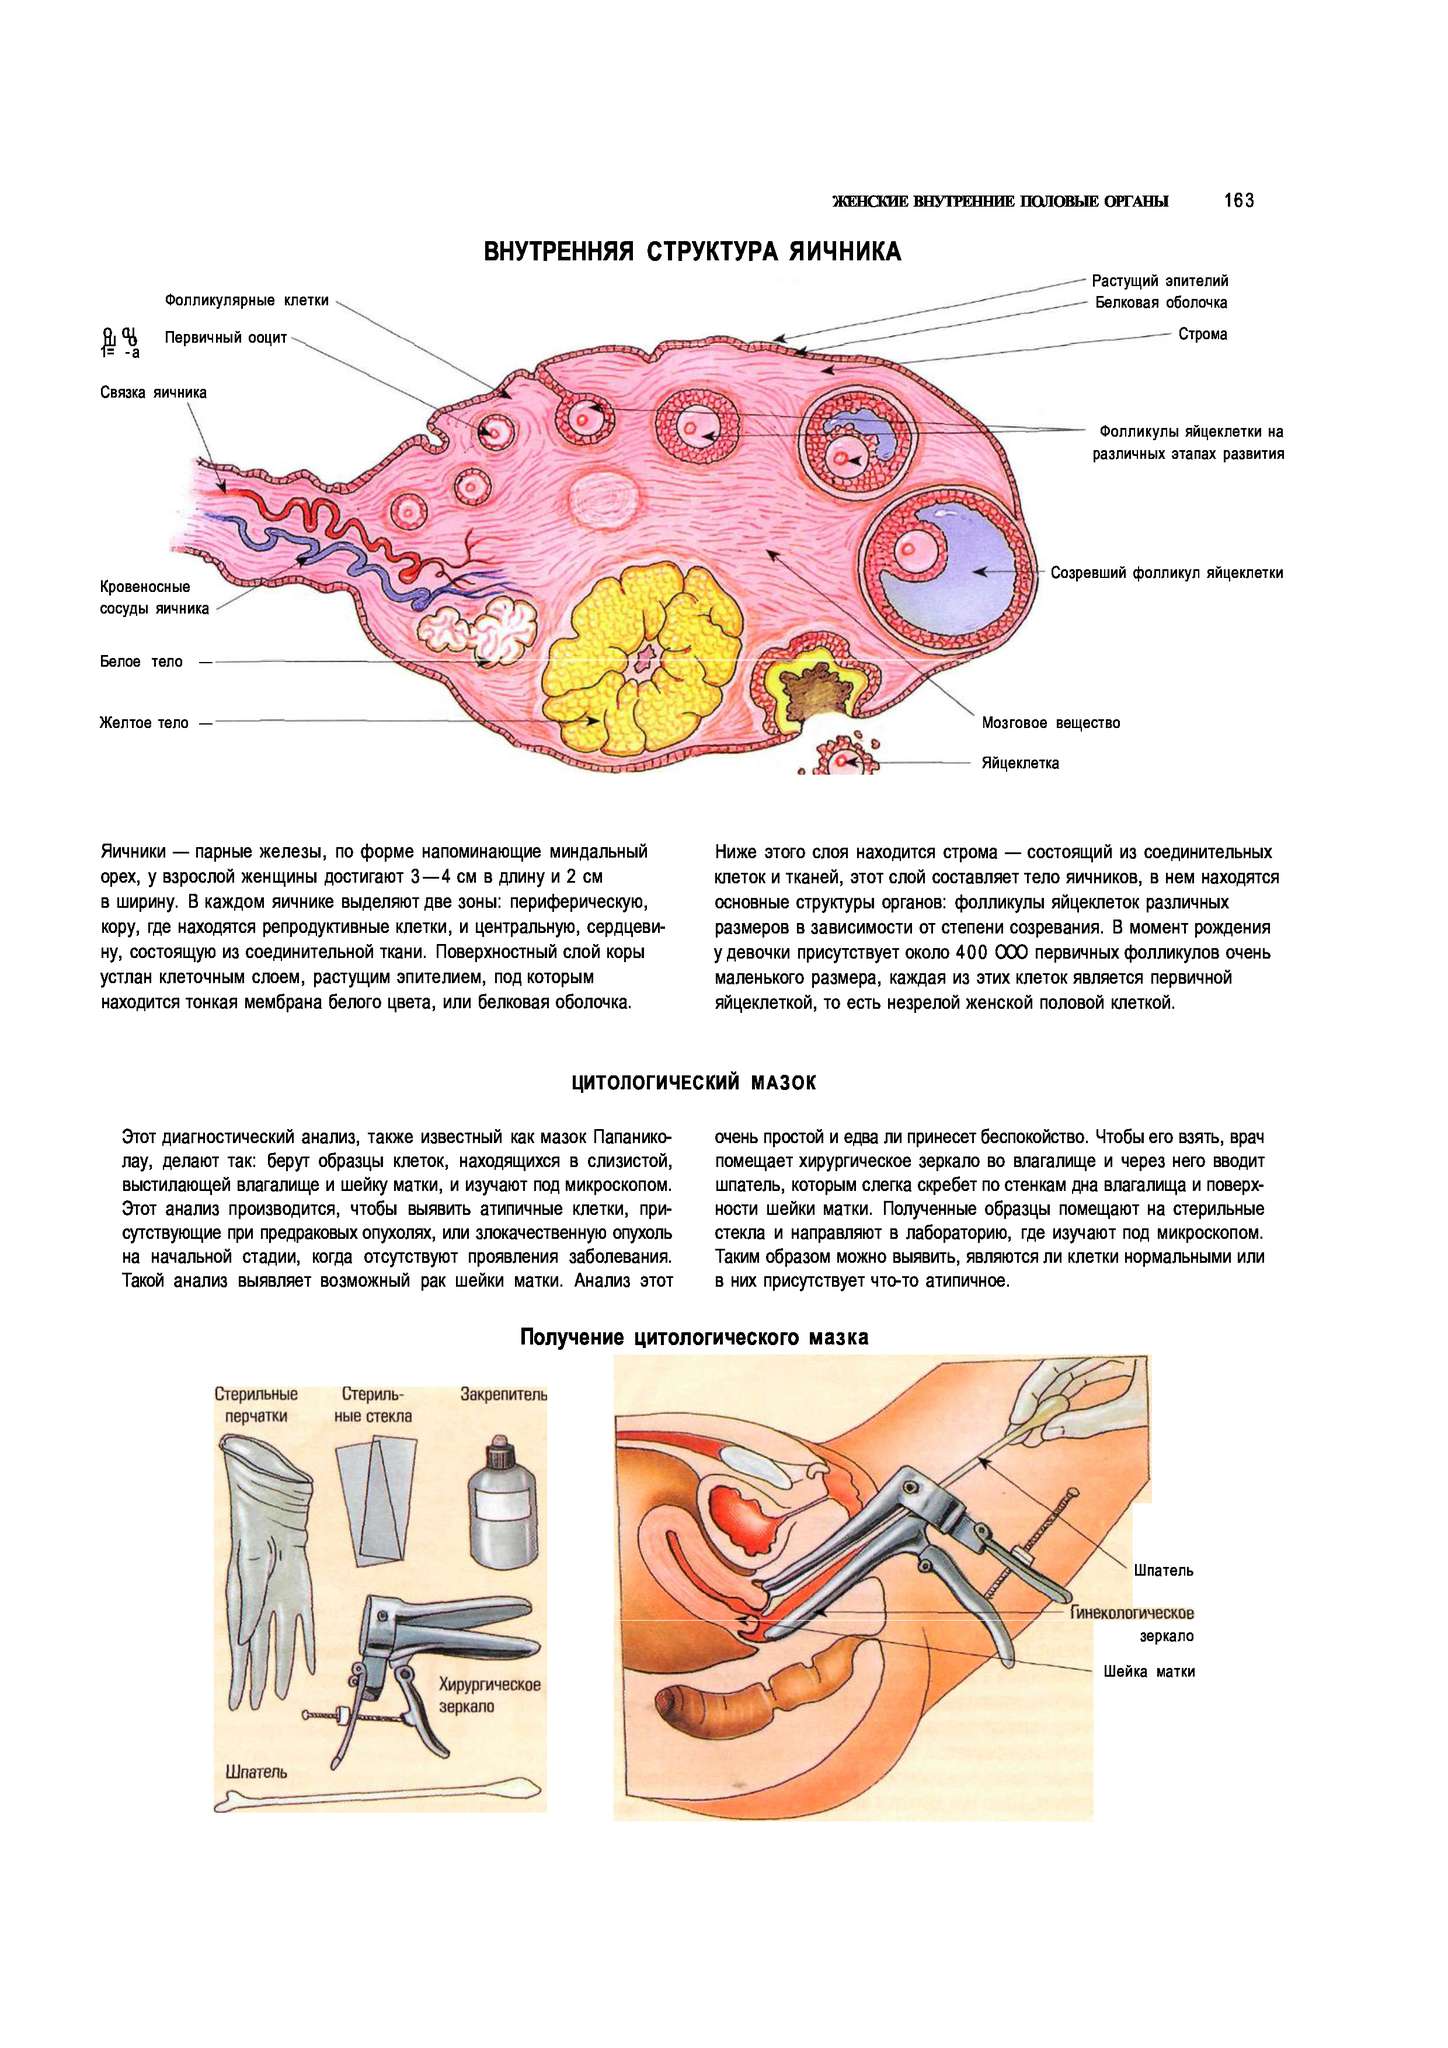 Как устроен женский половой орган. Яичники расположение строение функции. Женская половая система яичник анатомия строение. Внутреннее строение яичника анатомия. Женские половые органы анатомия яичник.